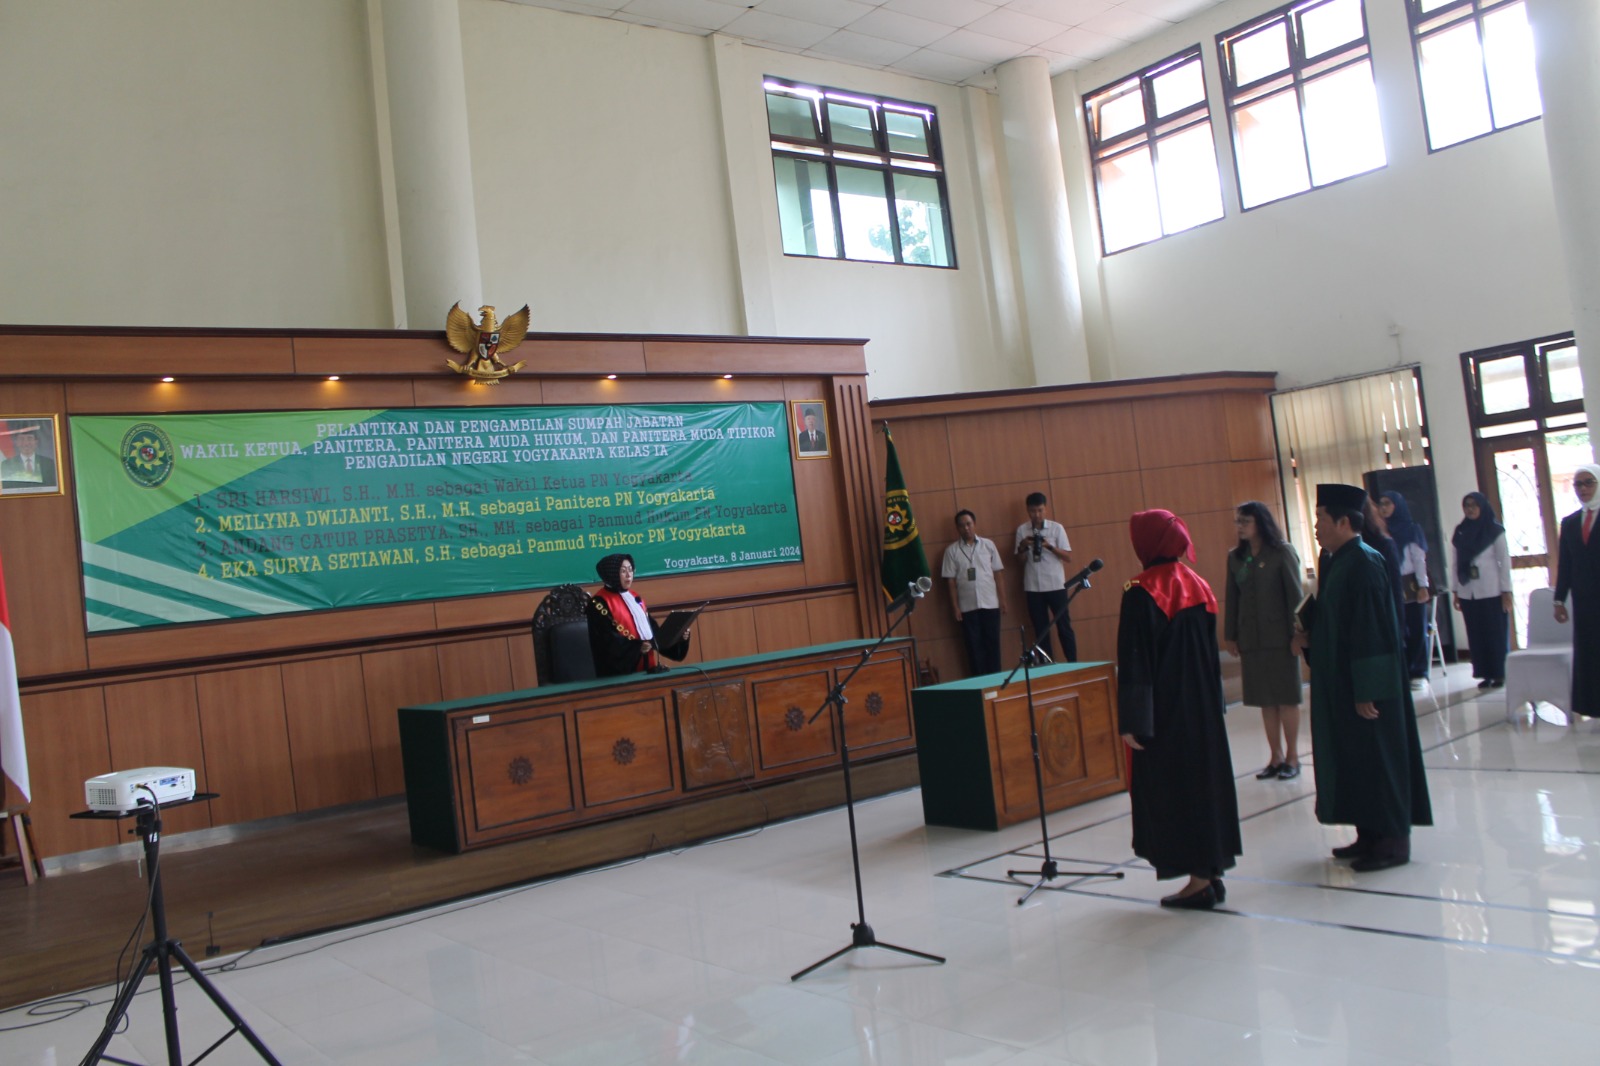 Upacara Pelantikan dan Pengambilan Sumpah Jabatan Wakil Ketua, Panitera dan Panitera Muda Tipikor serta Panitera Muda Hukum Pengadilan Negeri Yogyakarta